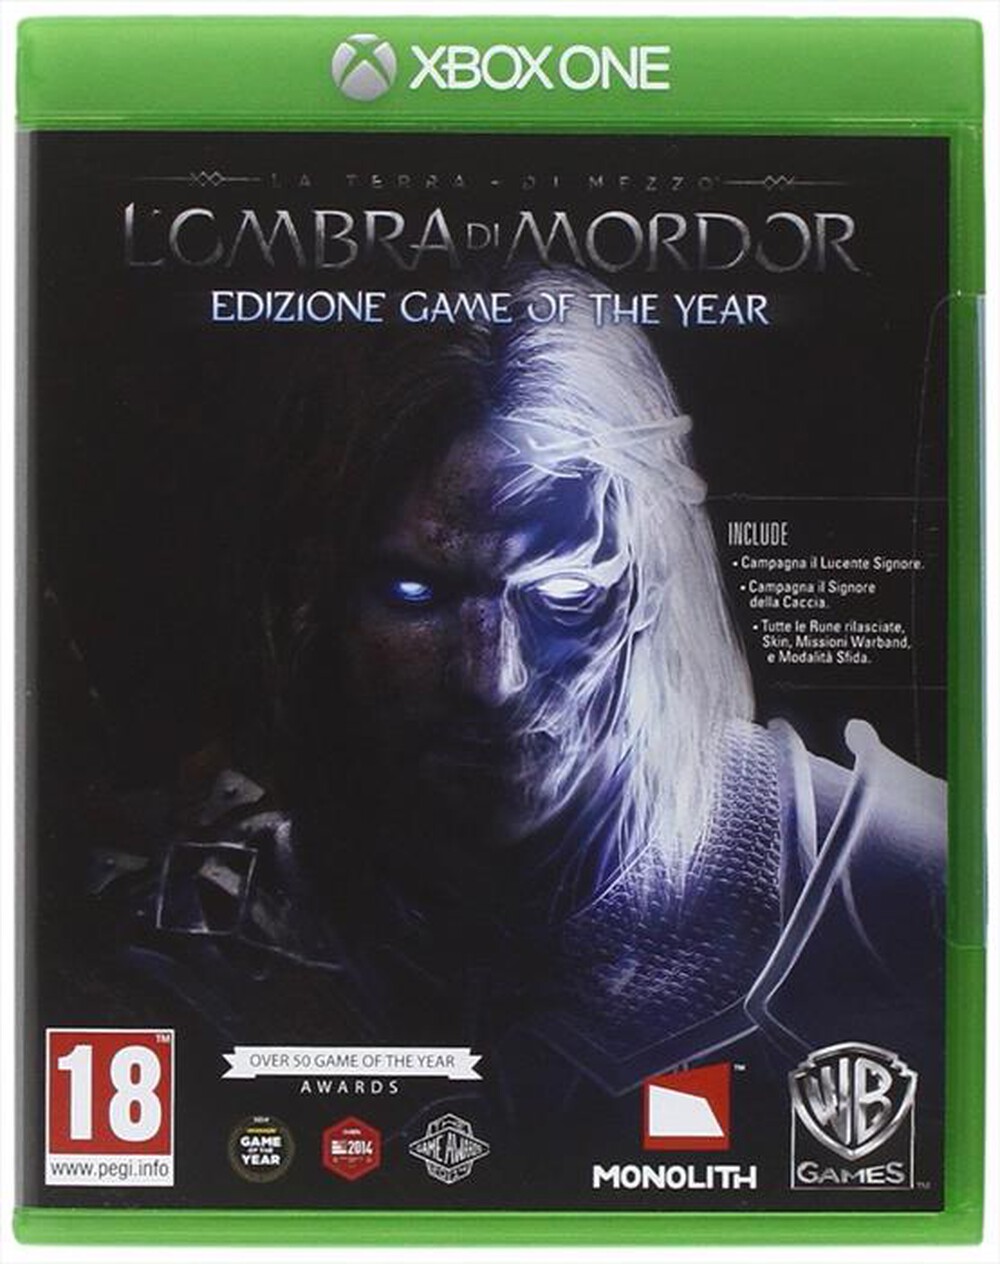 "WARNER GAMES - La Terra di Mezzo - L'Ombra di Mordor GOTY XboxOne"